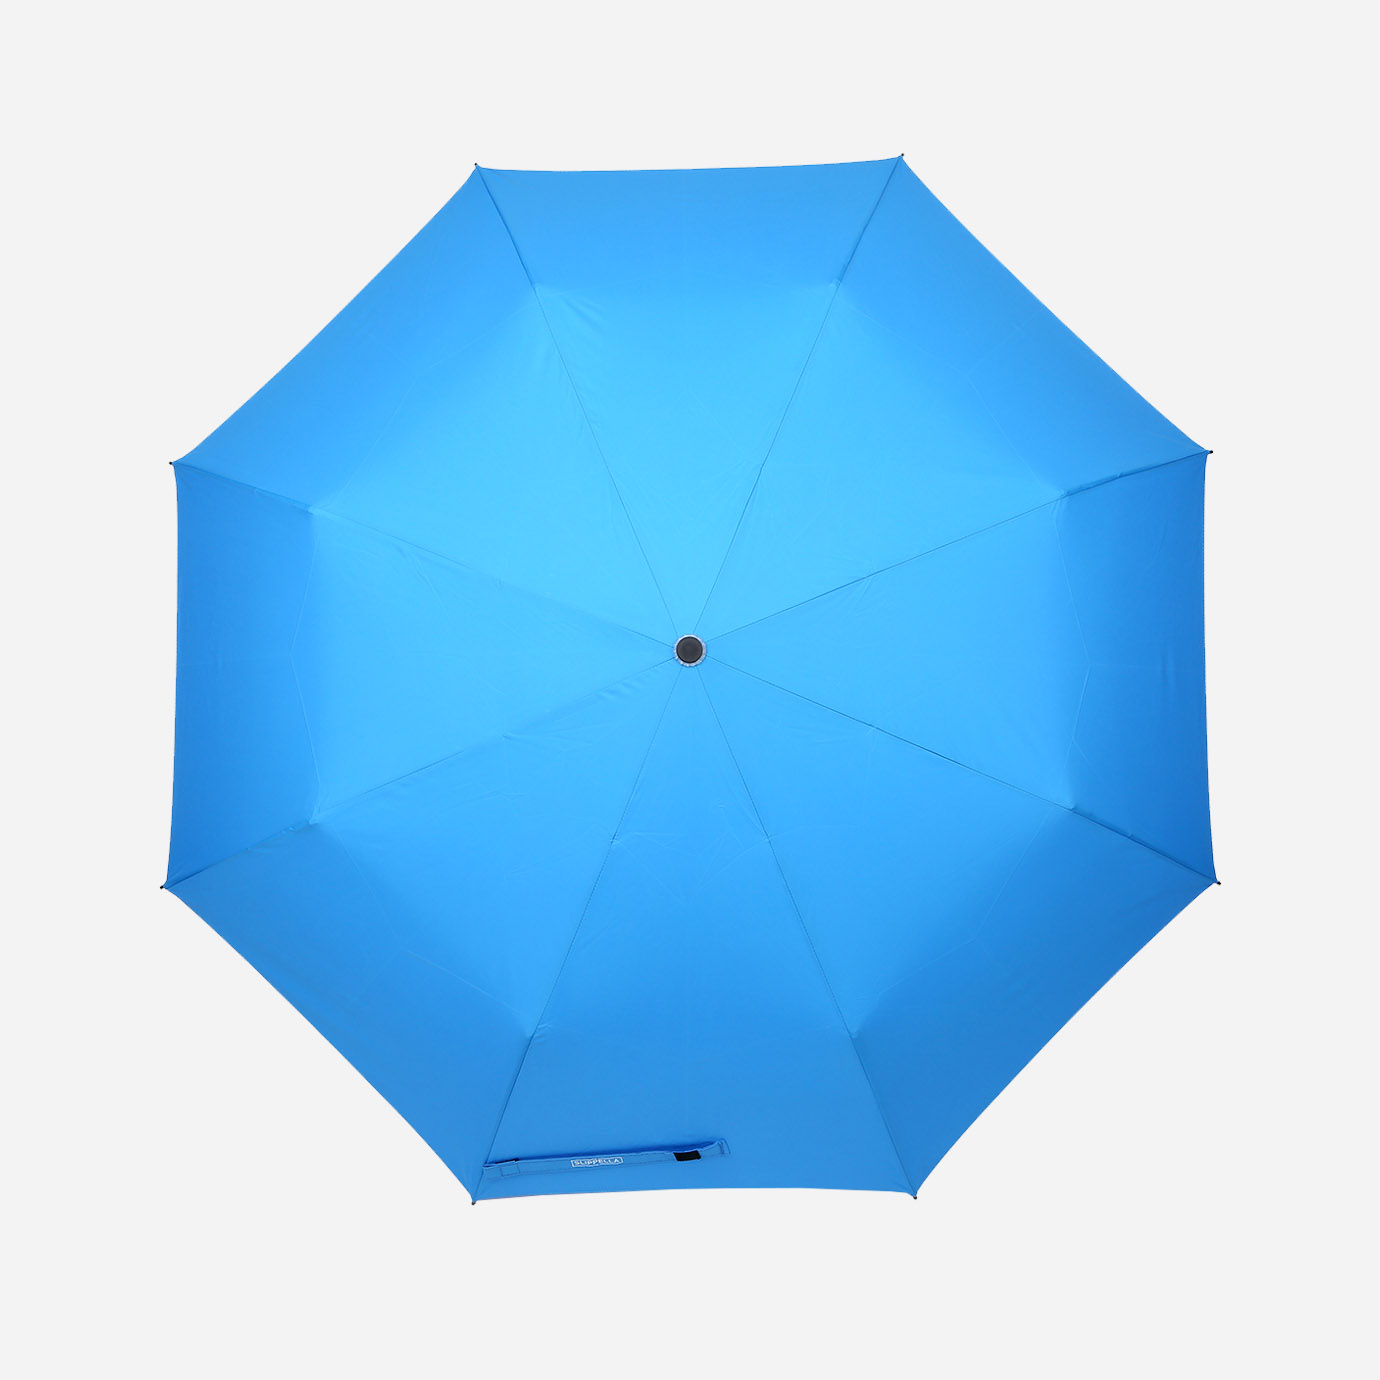 Slippella Regenschirm – Mit ultra wasserabweisender Technologie (Bundle Special)